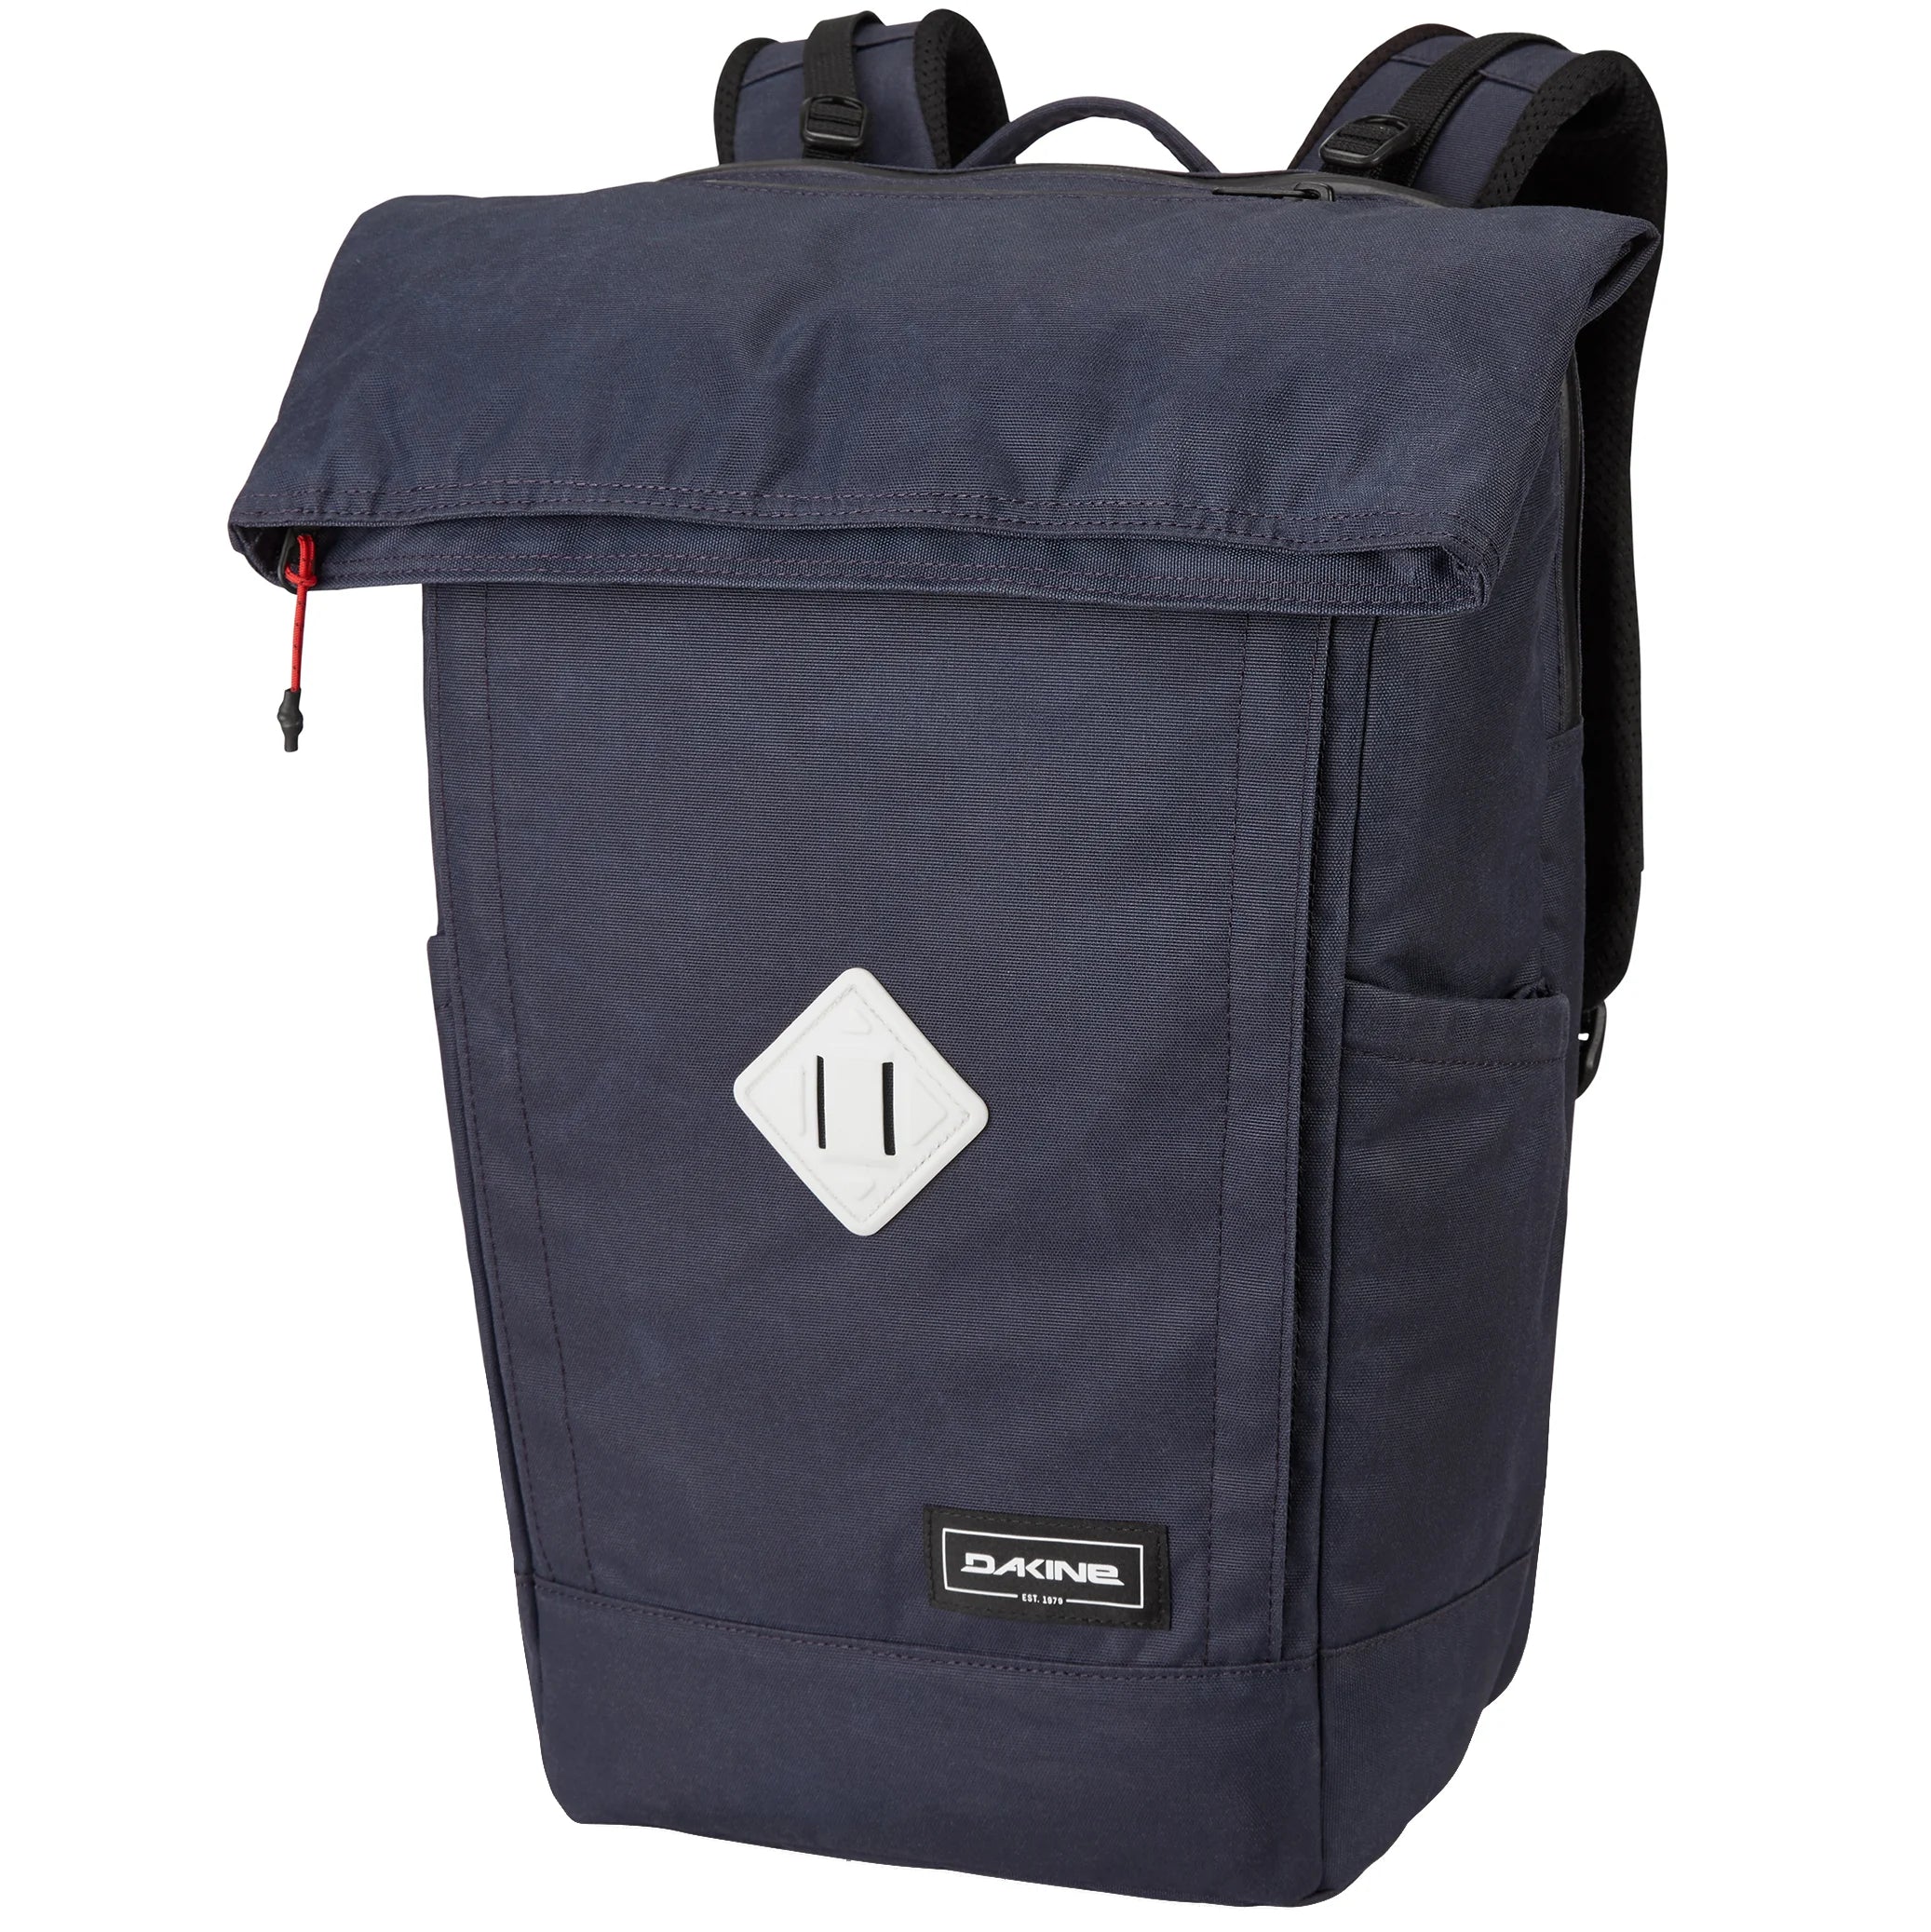 Dakine Packs & Bags Infinity Pack 21L Backpack 46 cm - black ripstop